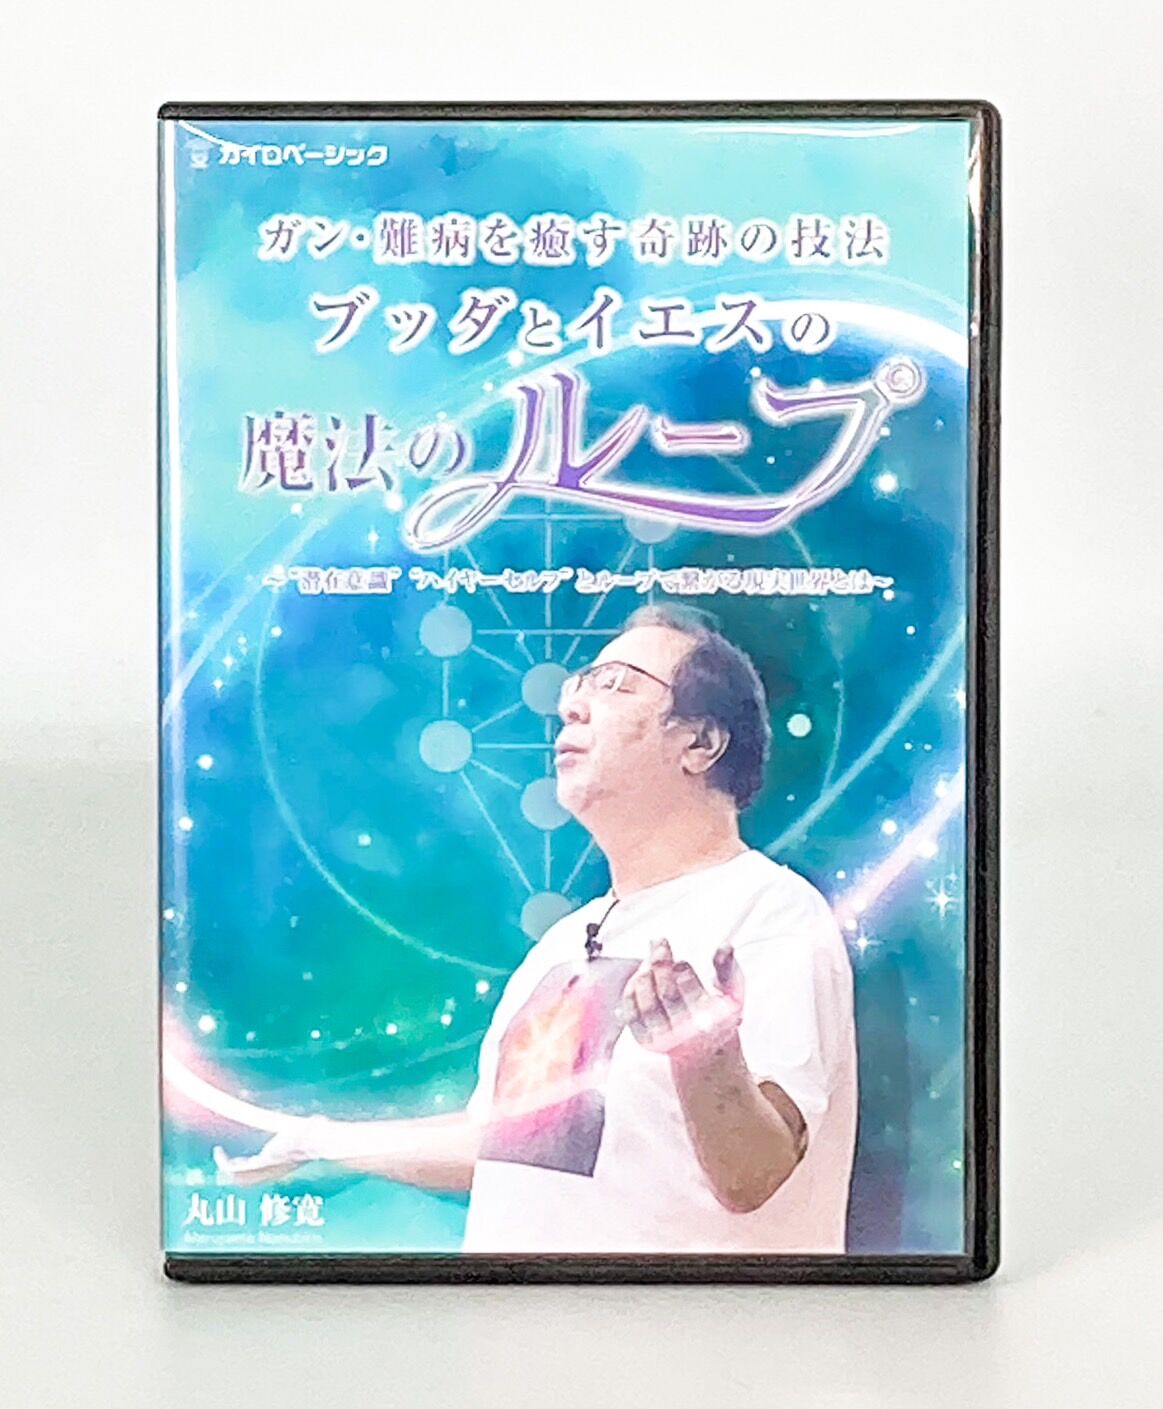 ブッダとイエスの魔法のループ 丸山修寛 DVD + テキストループ